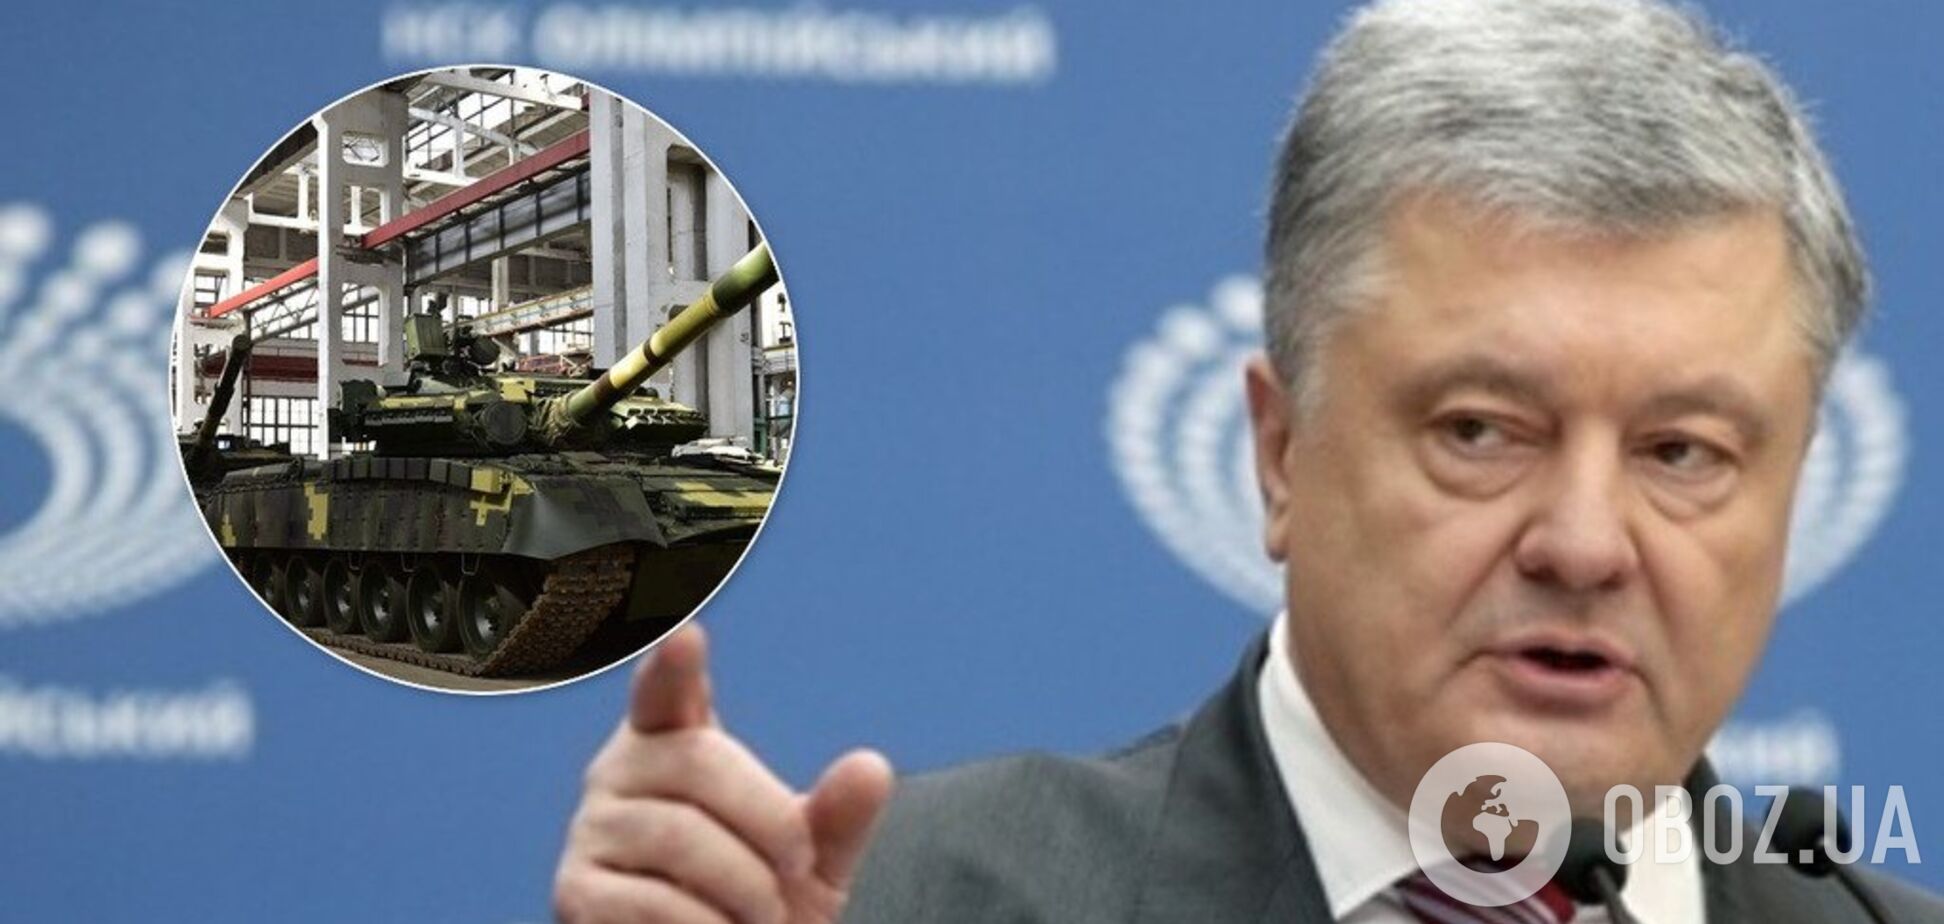 Хищения в 'Укроборонпроме': масштабный аудит оборонной сферы запущен